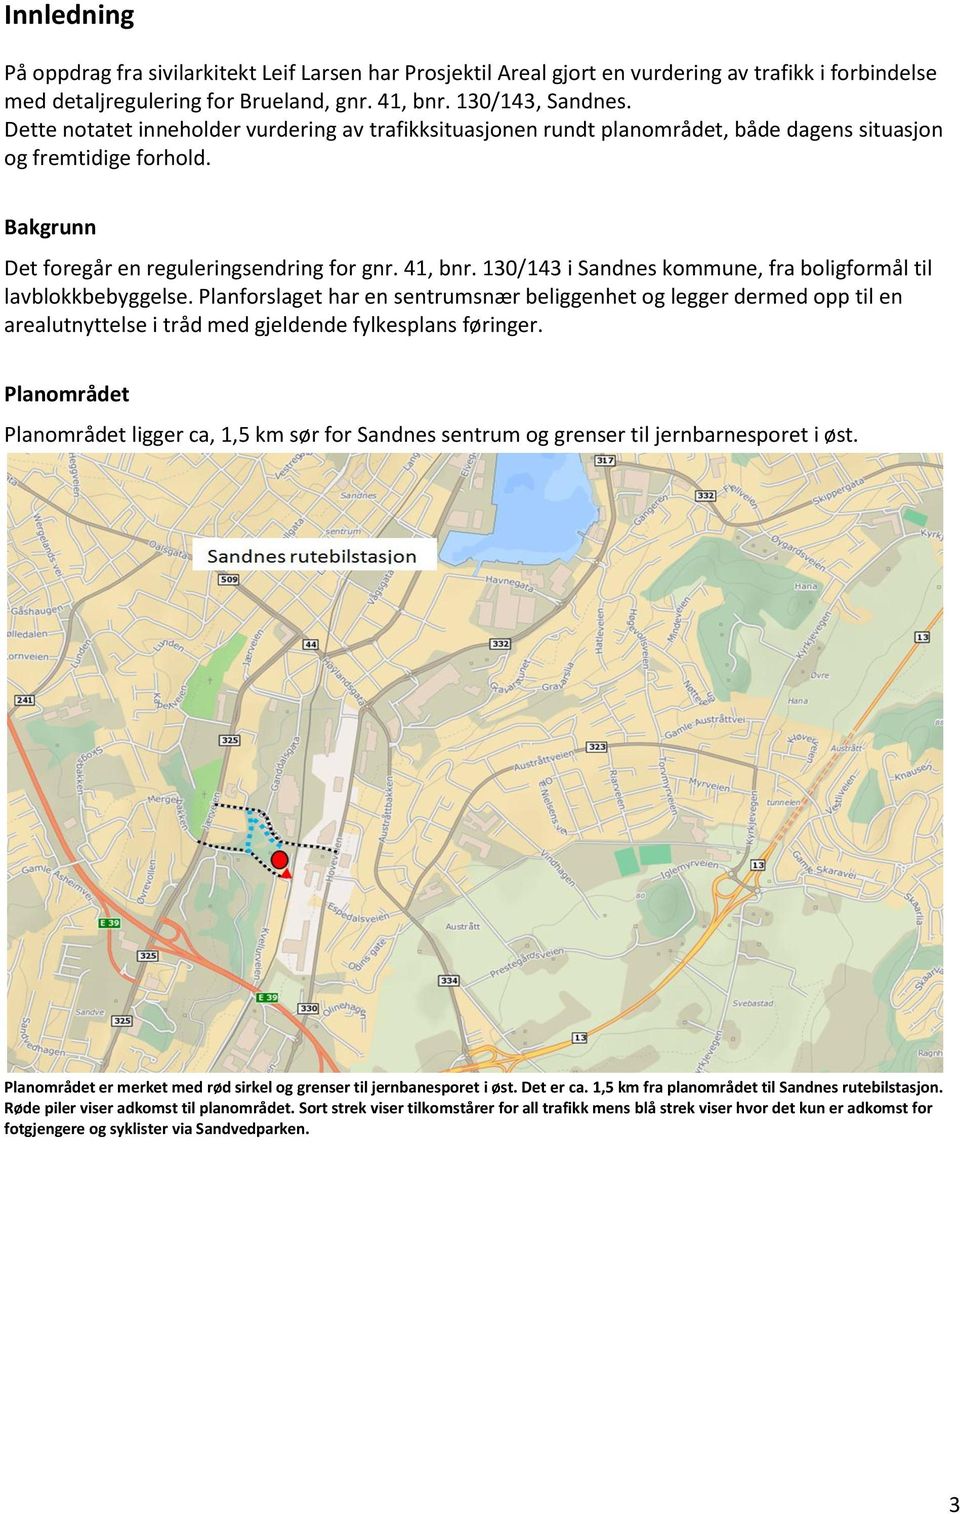 130/143 i Sandnes kommune, fra boligformål til lavblokkbebyggelse. Planforslaget har en sentrumsnær beliggenhet og legger dermed opp til en arealutnyttelse i tråd med gjeldende fylkesplans føringer.